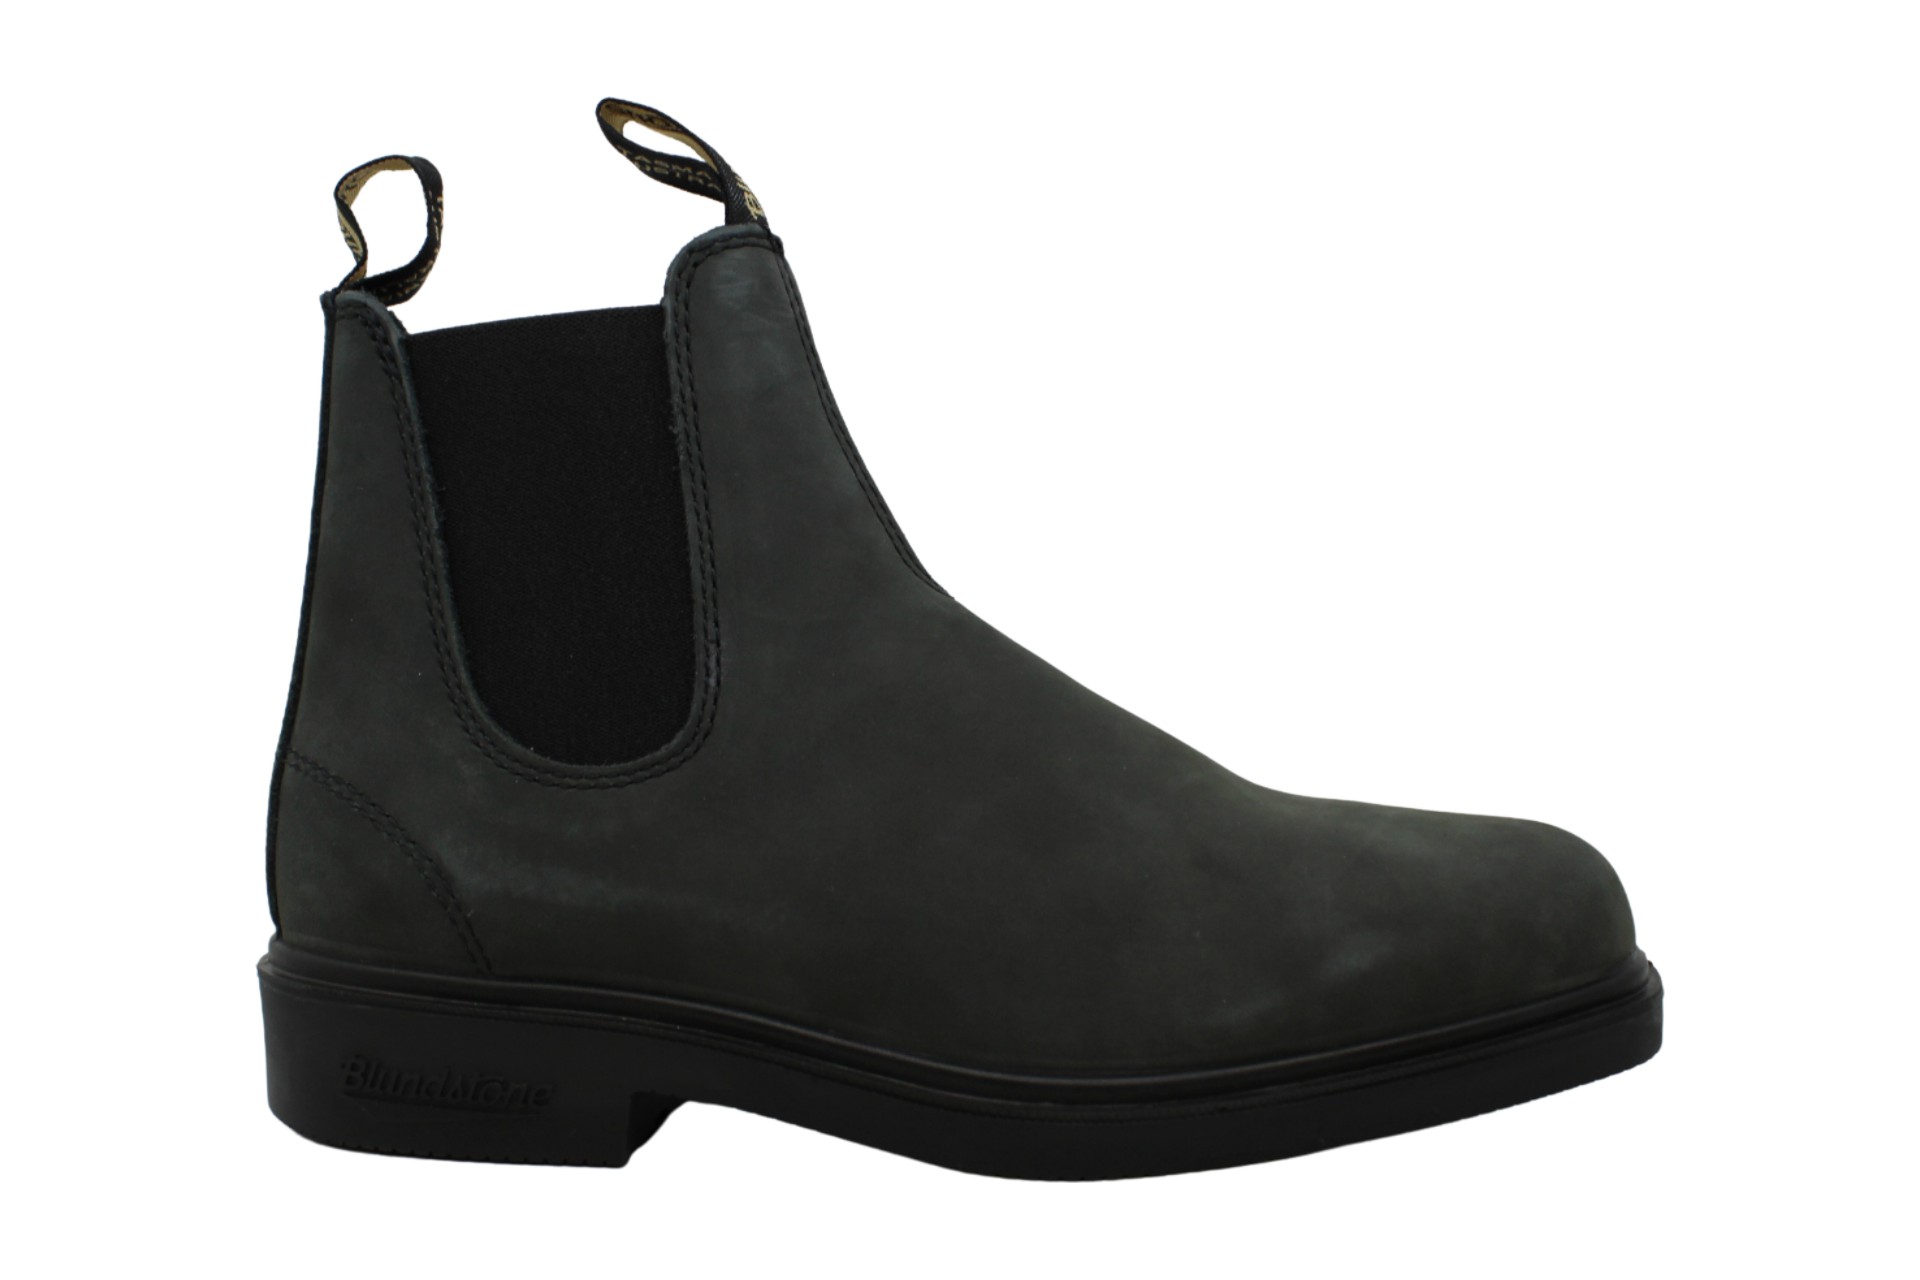 Aaaaa Mens hocoyf Boots, Dark Grey, Size 7.5